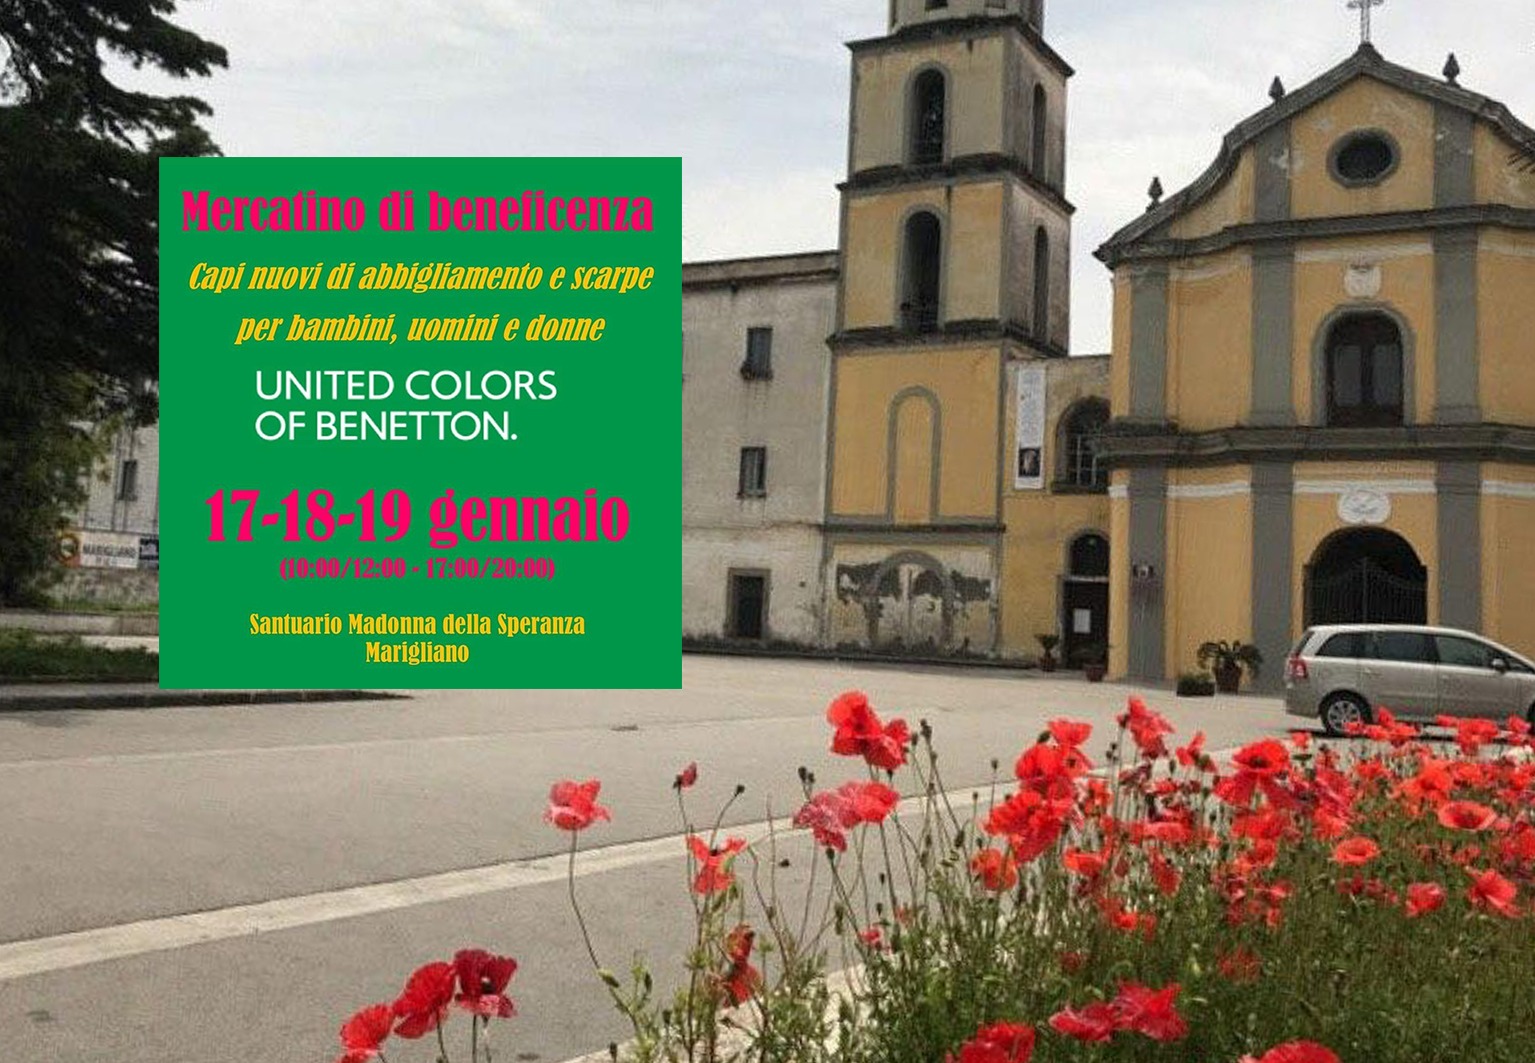 Marigliano, Convento di San Vito: Compra un capo Benetton e aiuta un senza tetto